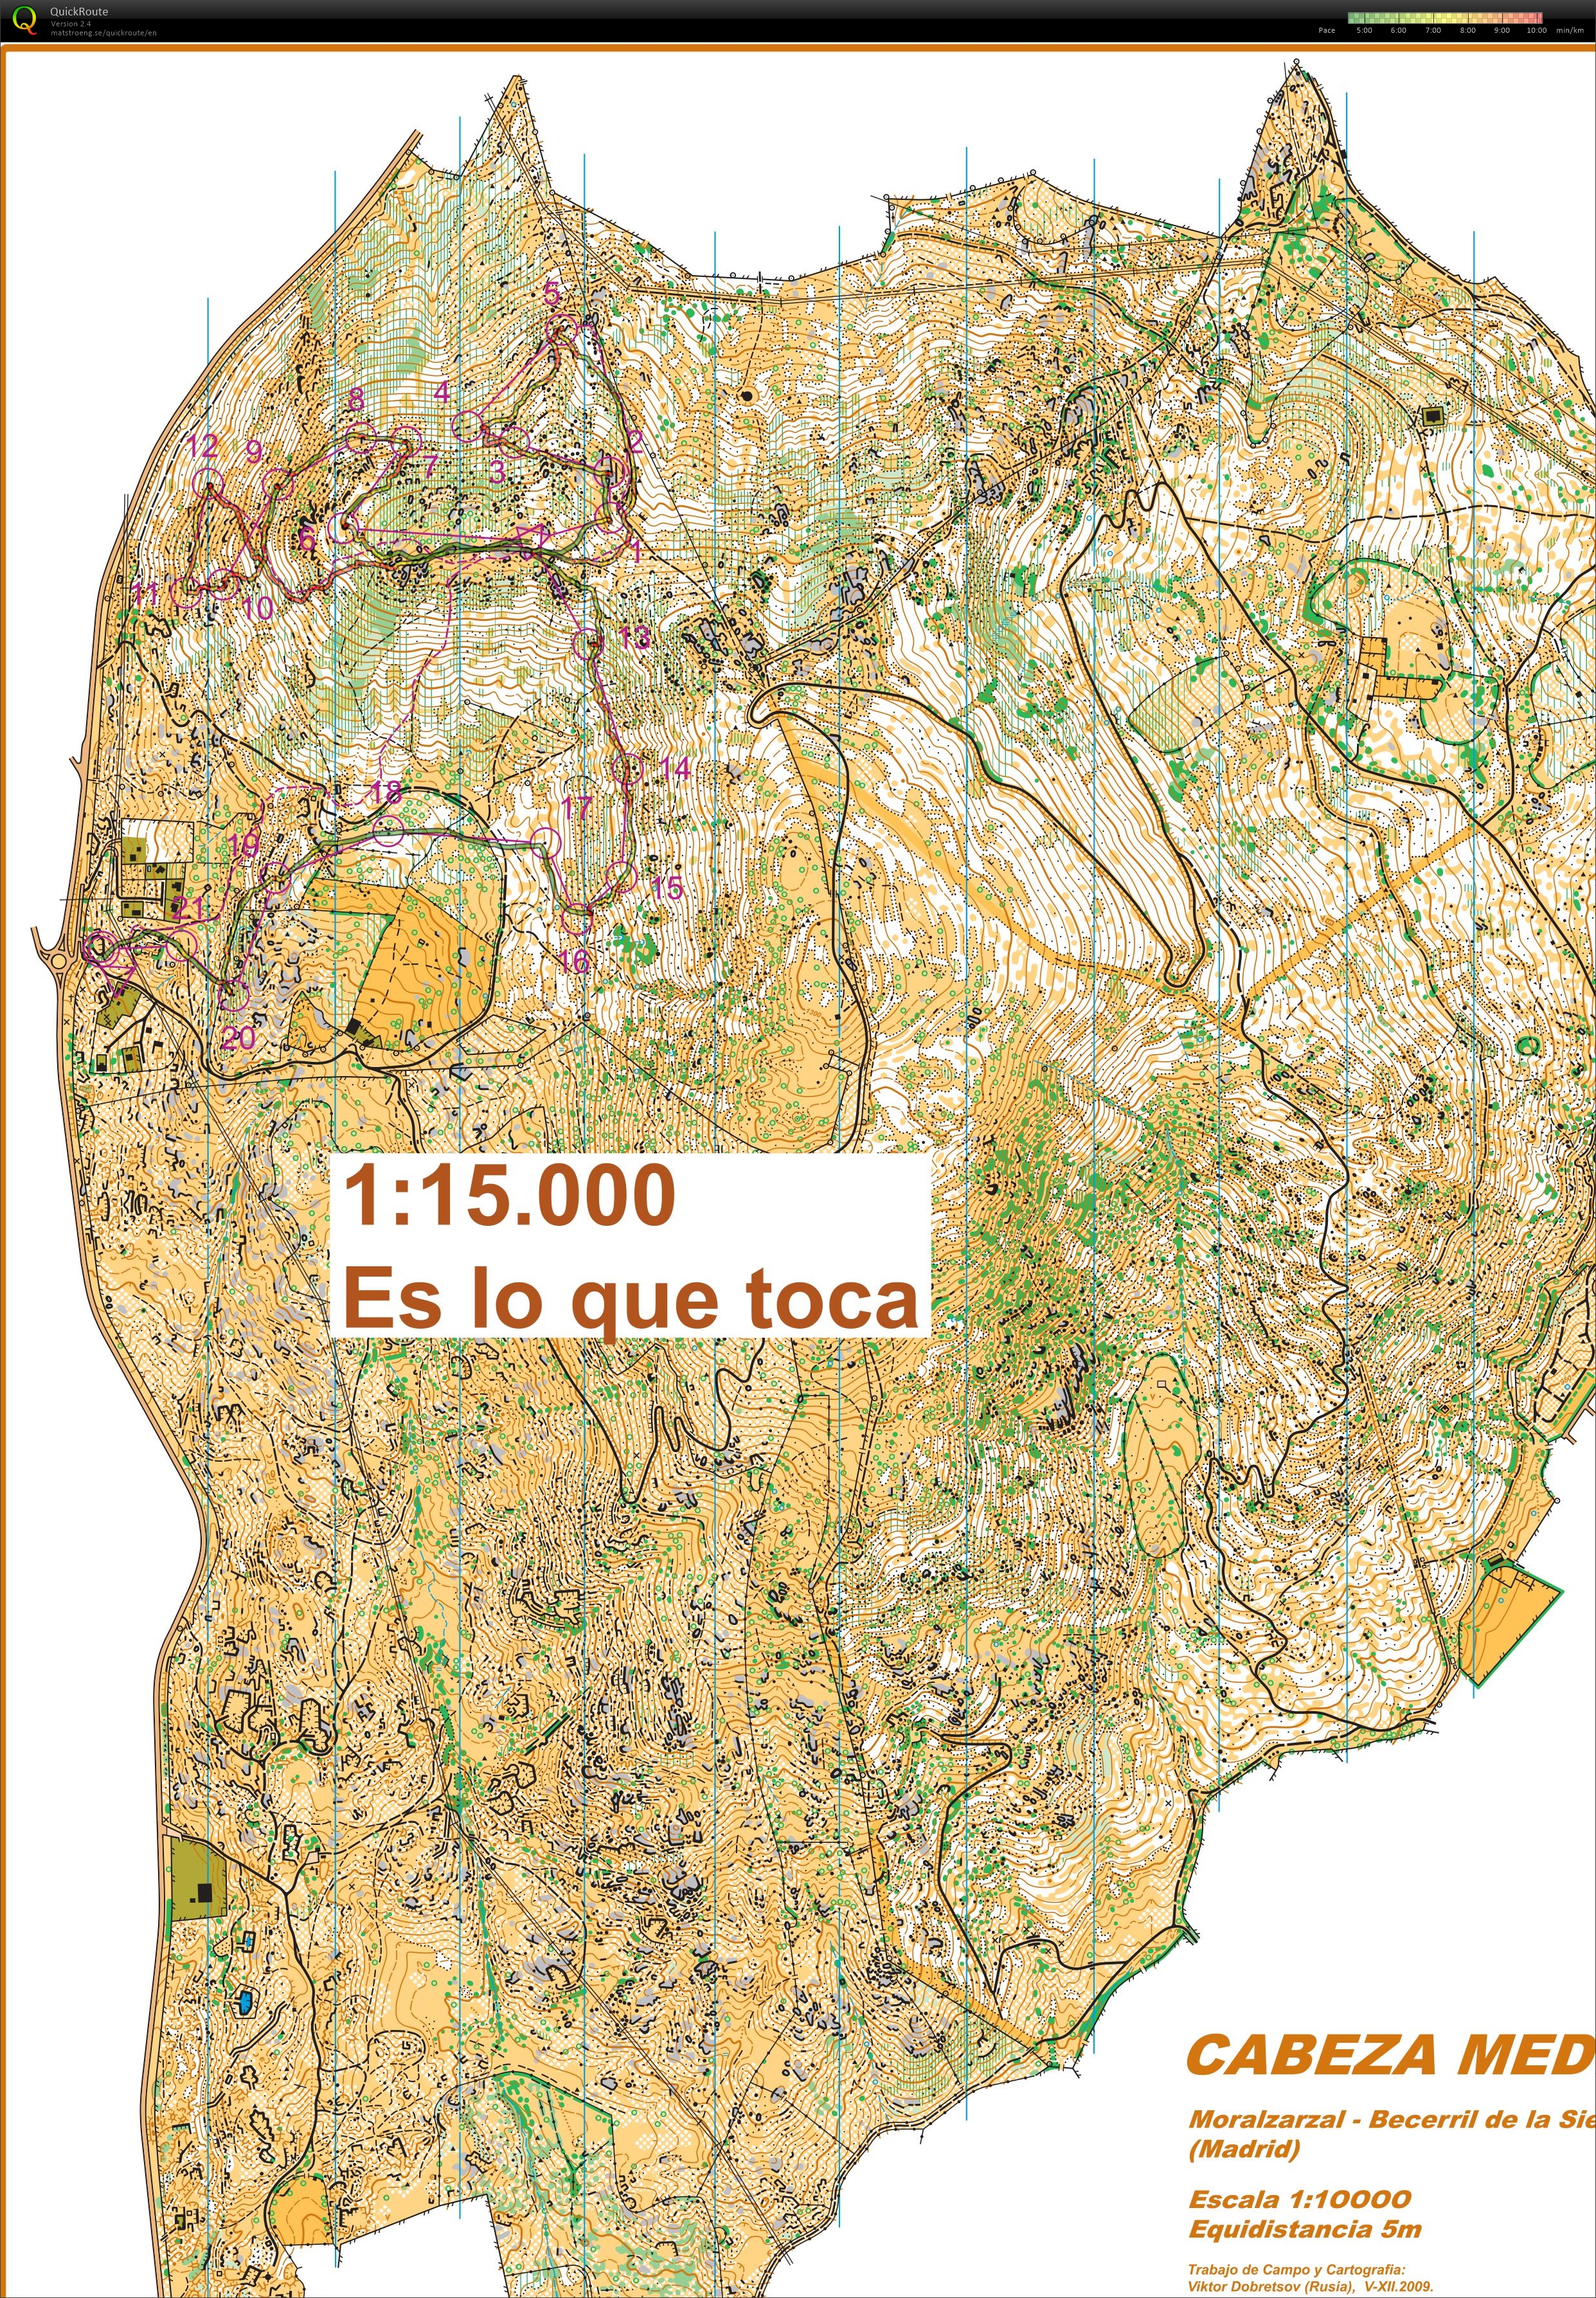 Cabeza Mediana downhills (2018-05-01)